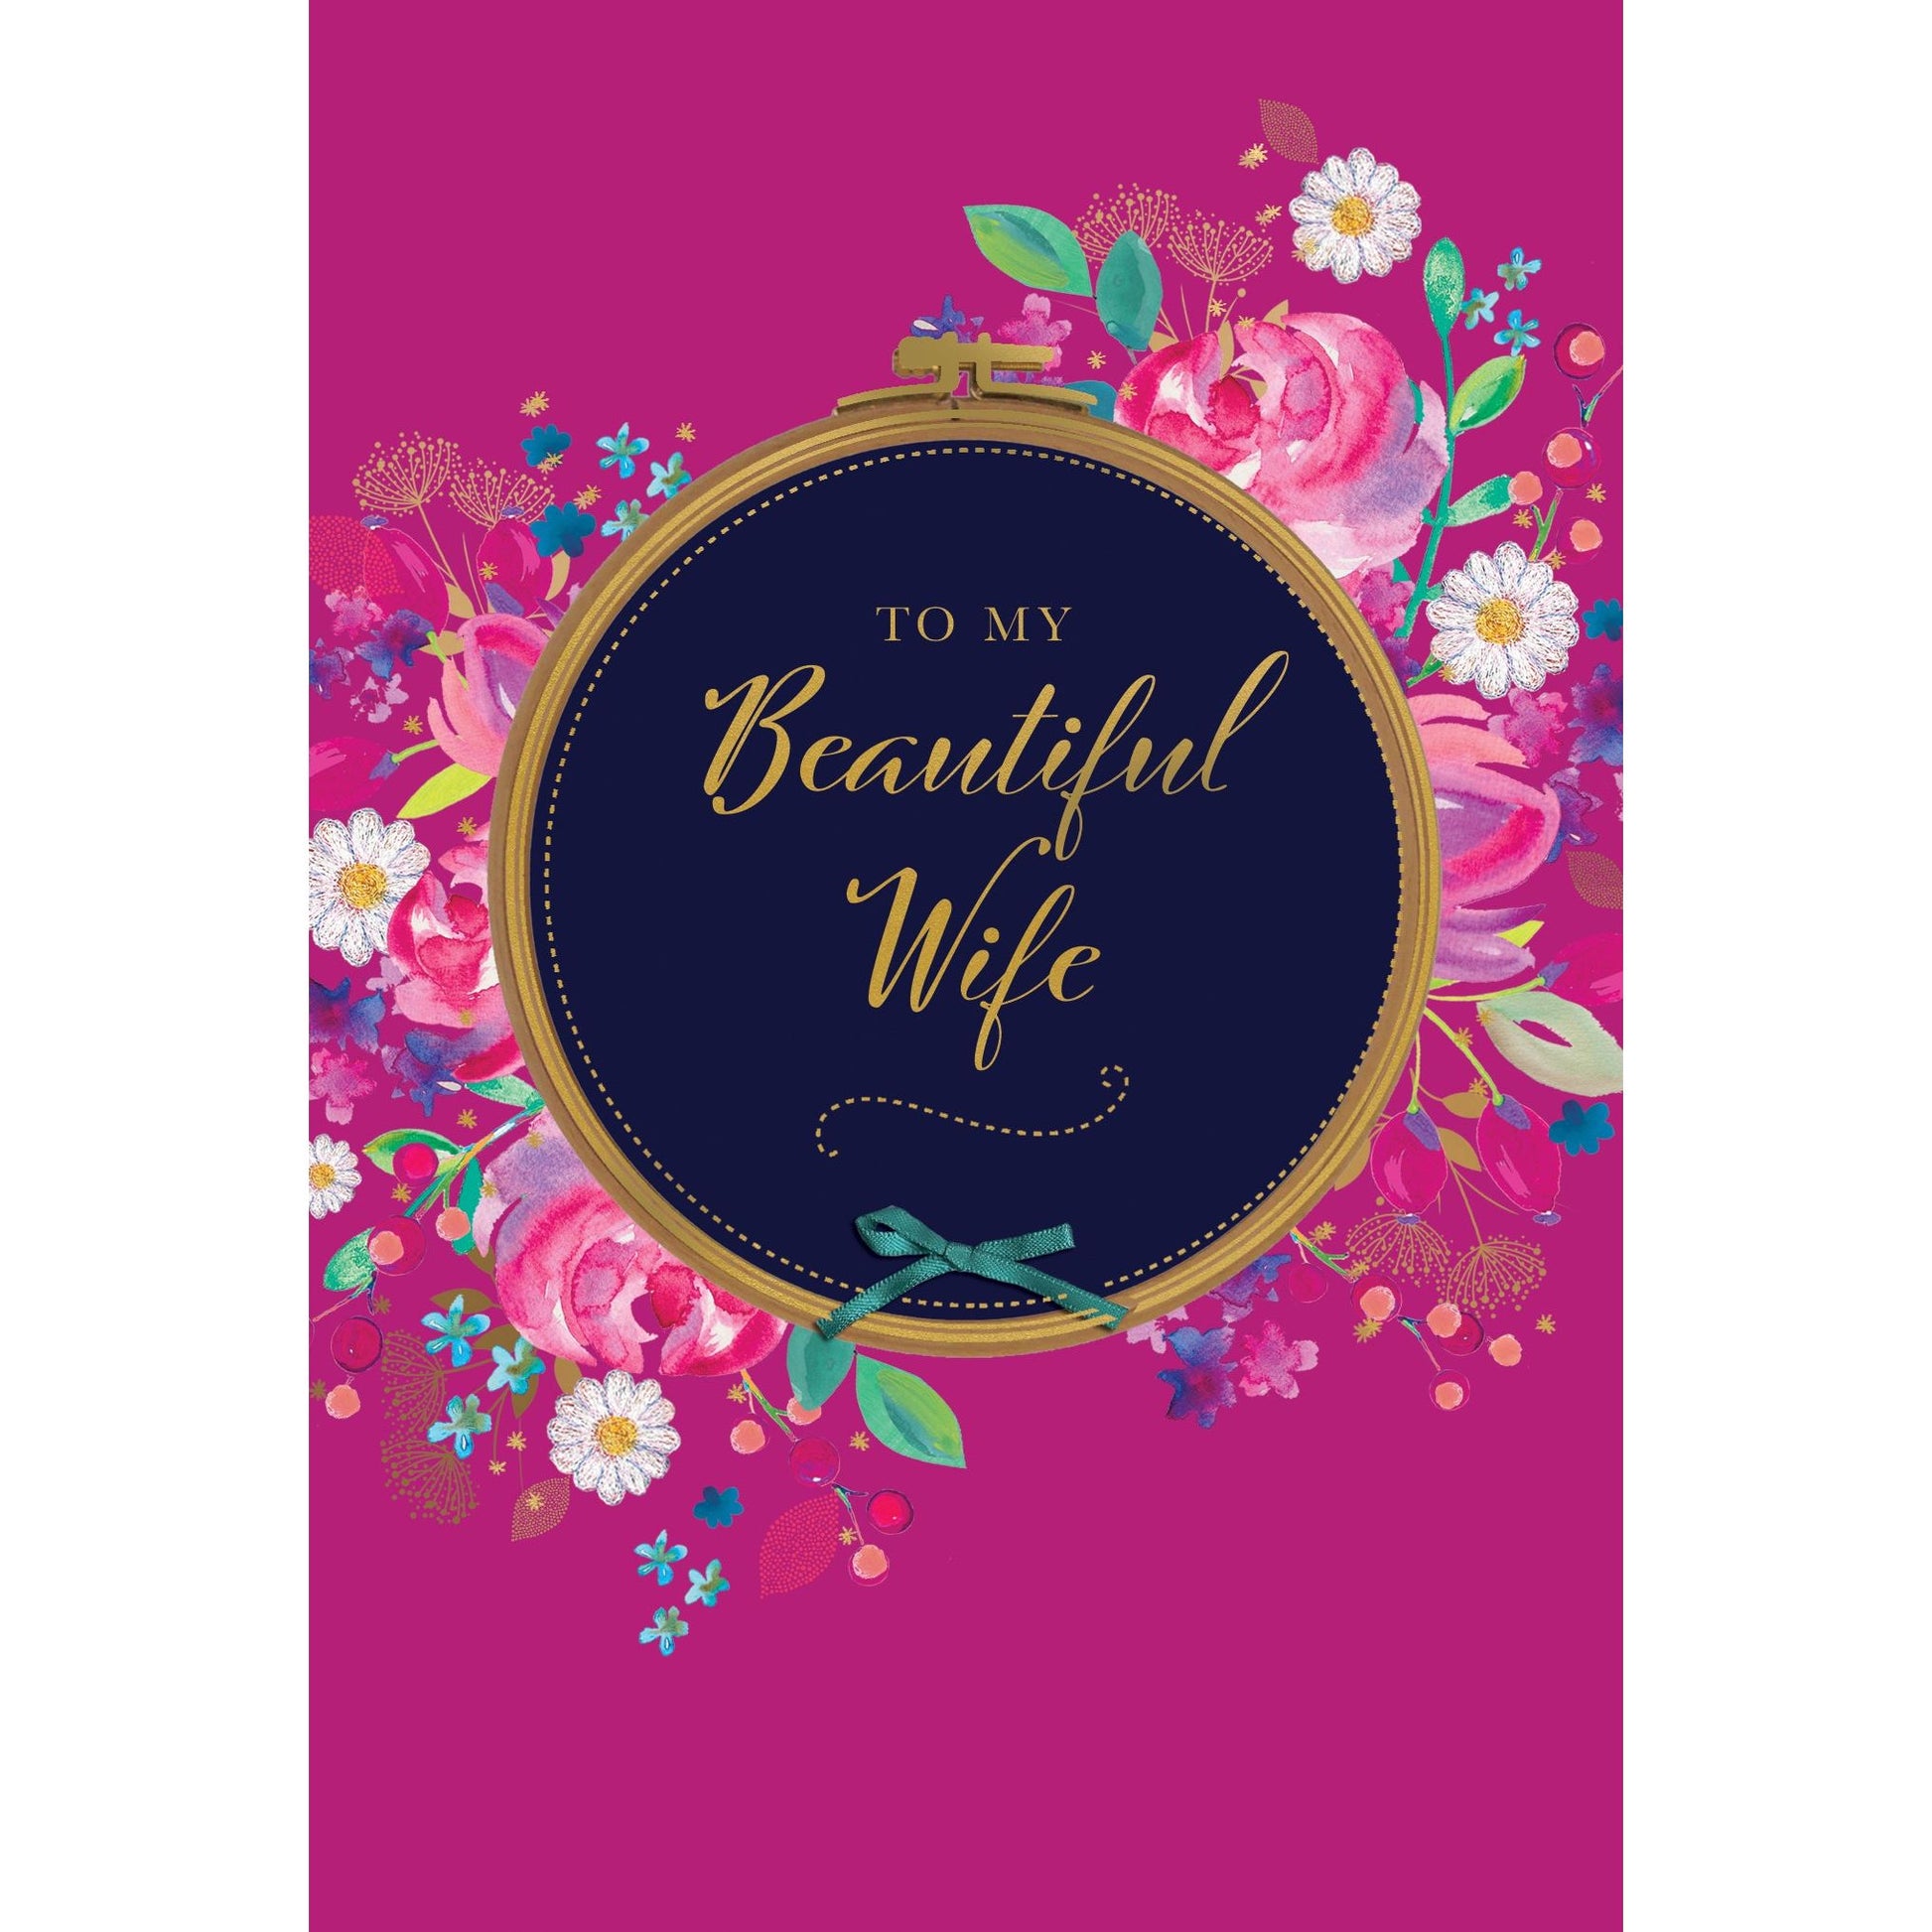 Wife Beautiful Wife Birthday Card - Cardmore